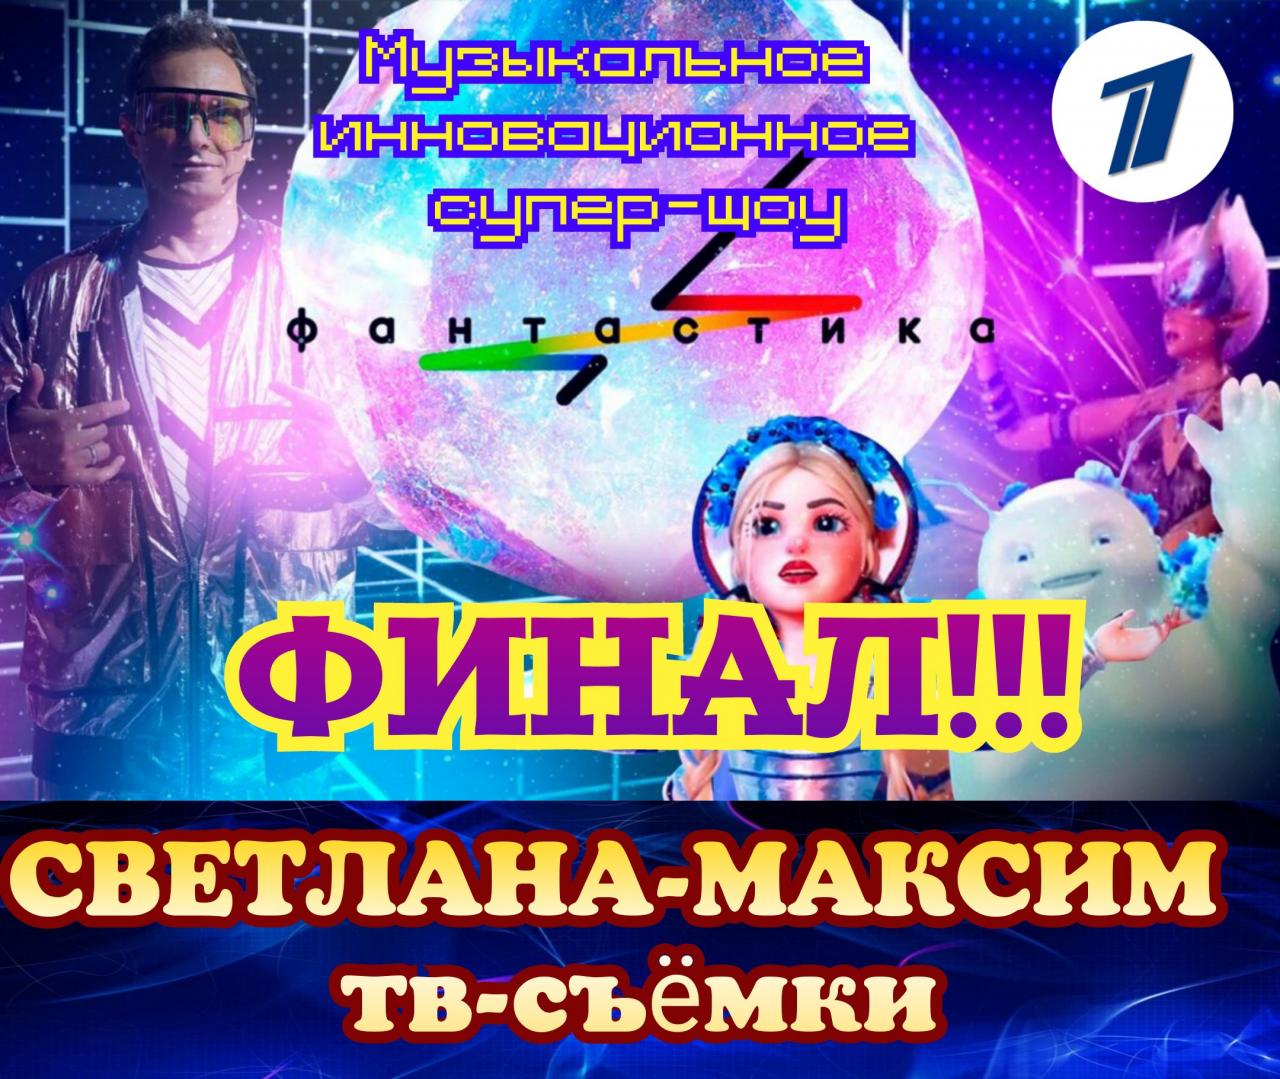 18 ноября музыкальное супер-шоу "ФАНТАСТИКА". Финал!